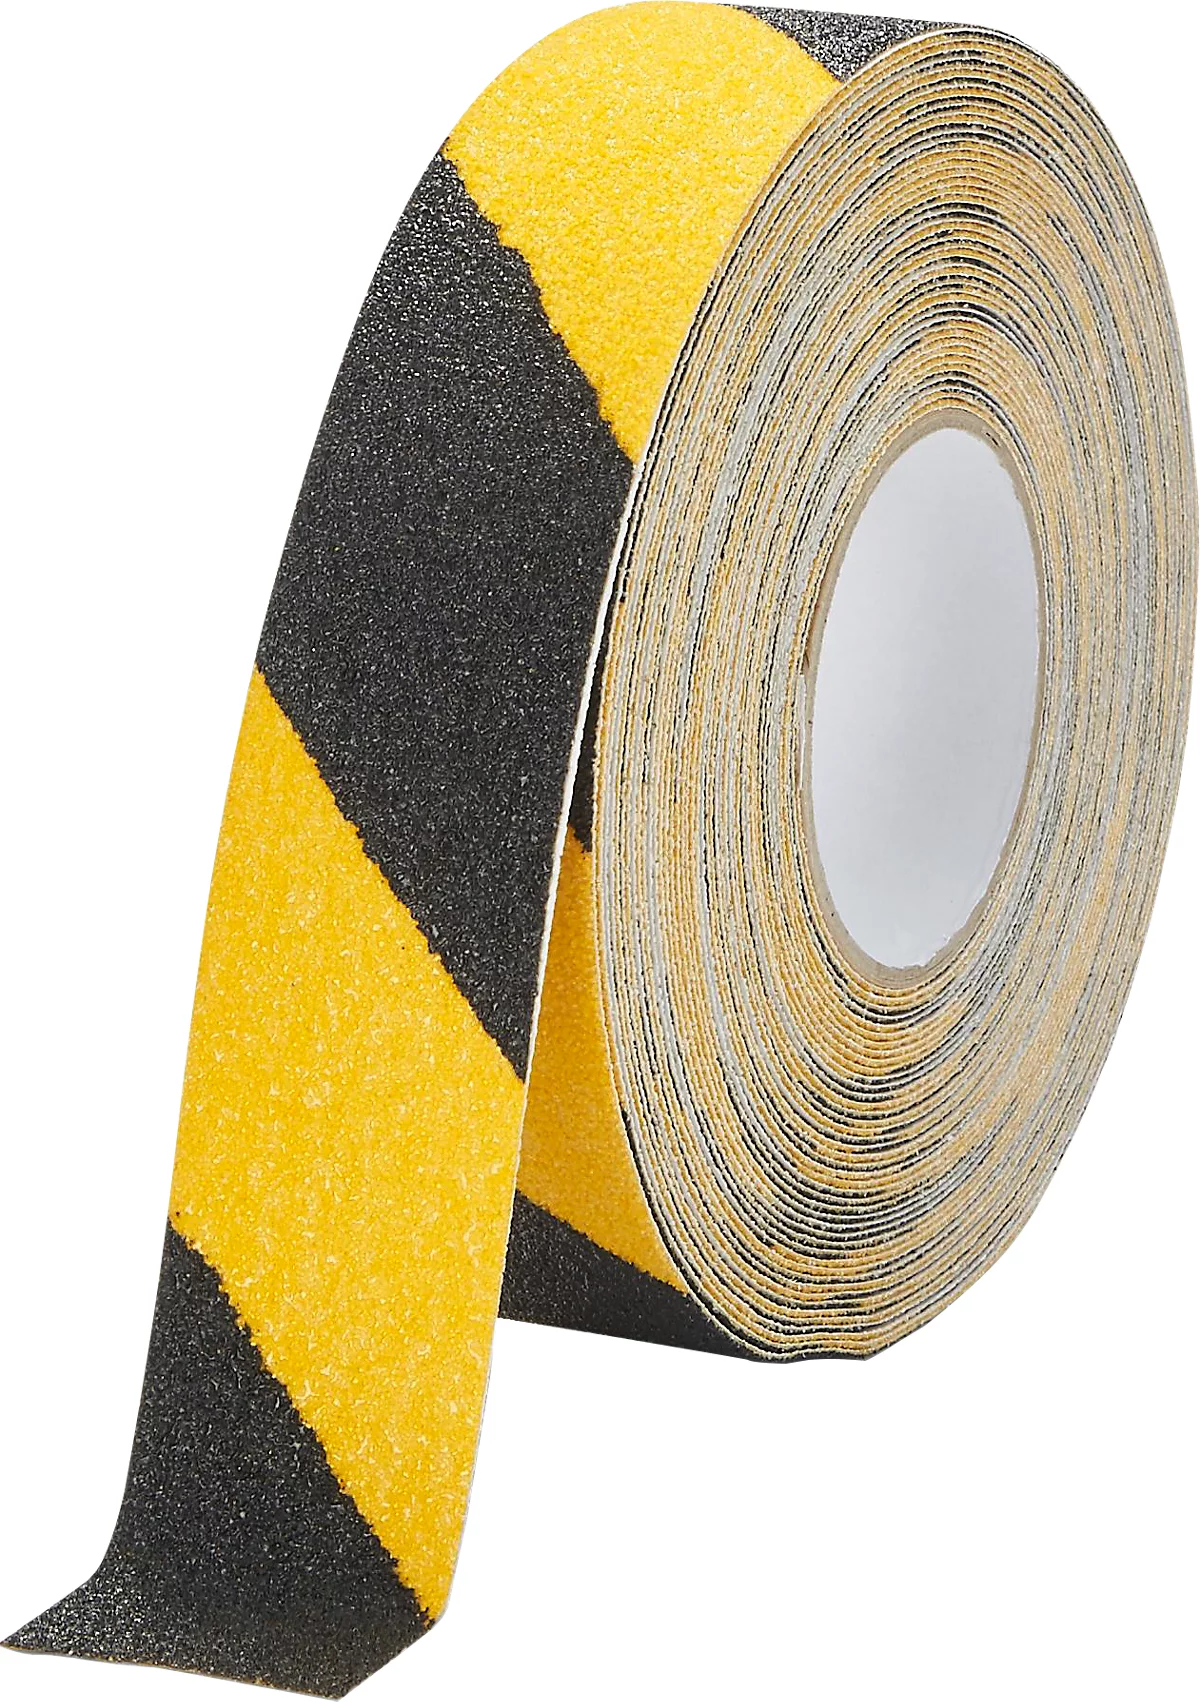 Antirutschband Durable Duraline Grip+ color, für Innen & Außen DIN 51130, selbstklebend, grobkörnige Beschichtung, 1 Rolle mit L 15 m x B 50 mm, schwarz-gelb